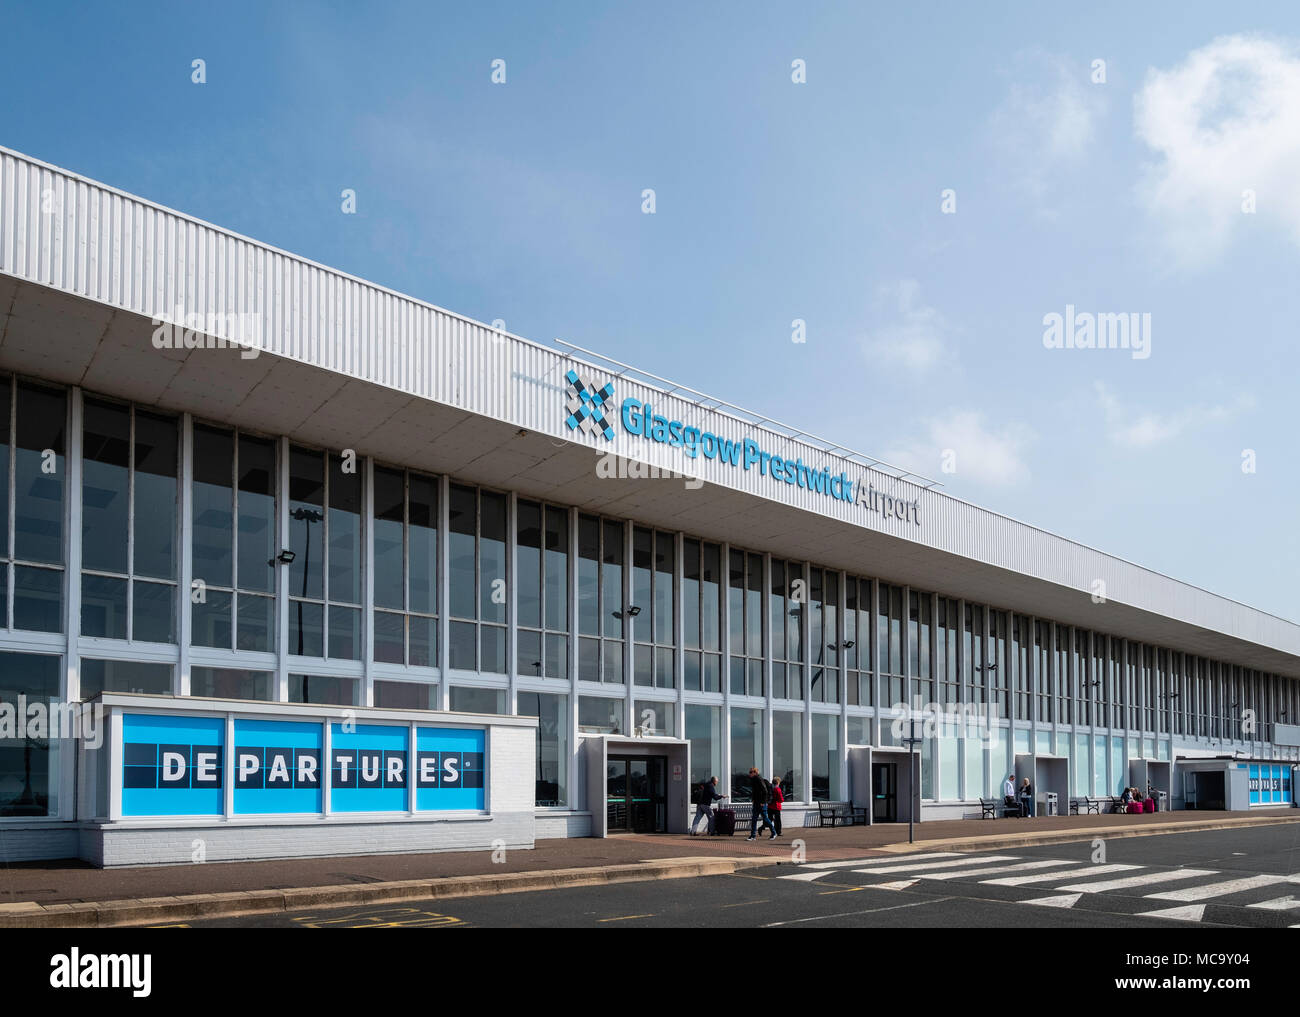 El exterior del terminal de pasajeros en el aeropuerto de Prestwick en Ayrshire, Escocia, Reino Unido Foto de stock